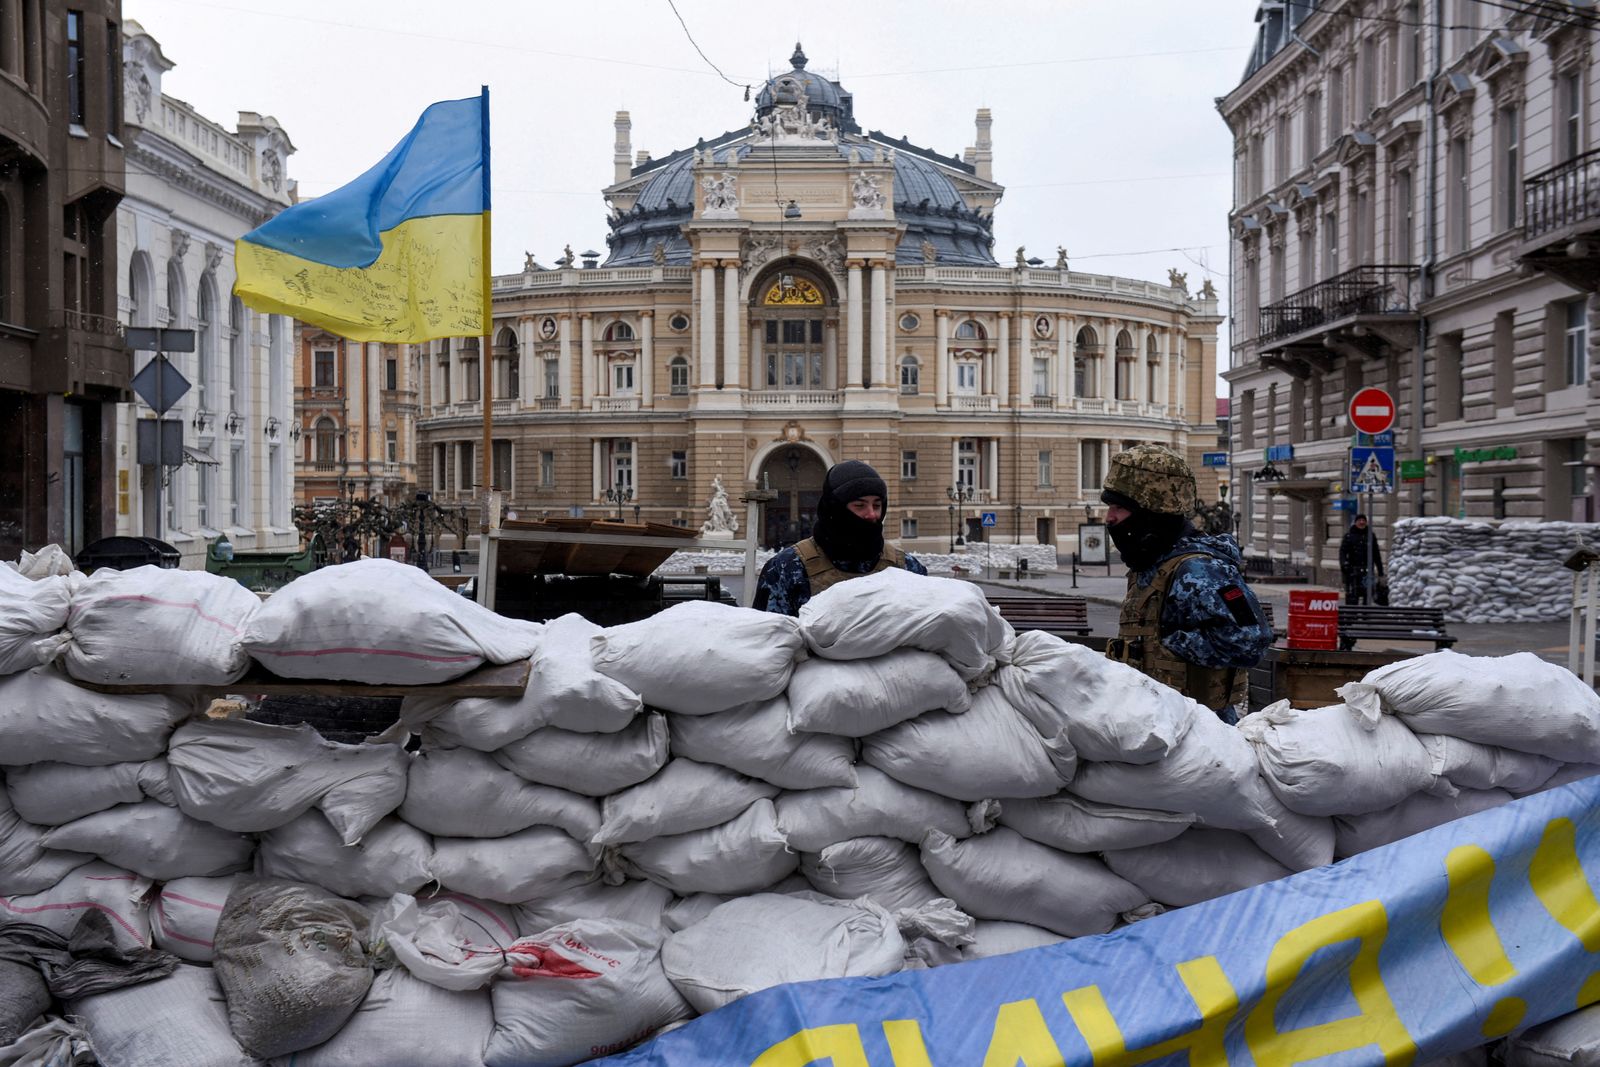 جنود يقفون وراء حاجز مع ظهور مسرح أوديسا للأوبرا وسط غزو روسي لأوكرانيا، أوديسا، أوكرانيا- 10 مارس 2022 - REUTERS